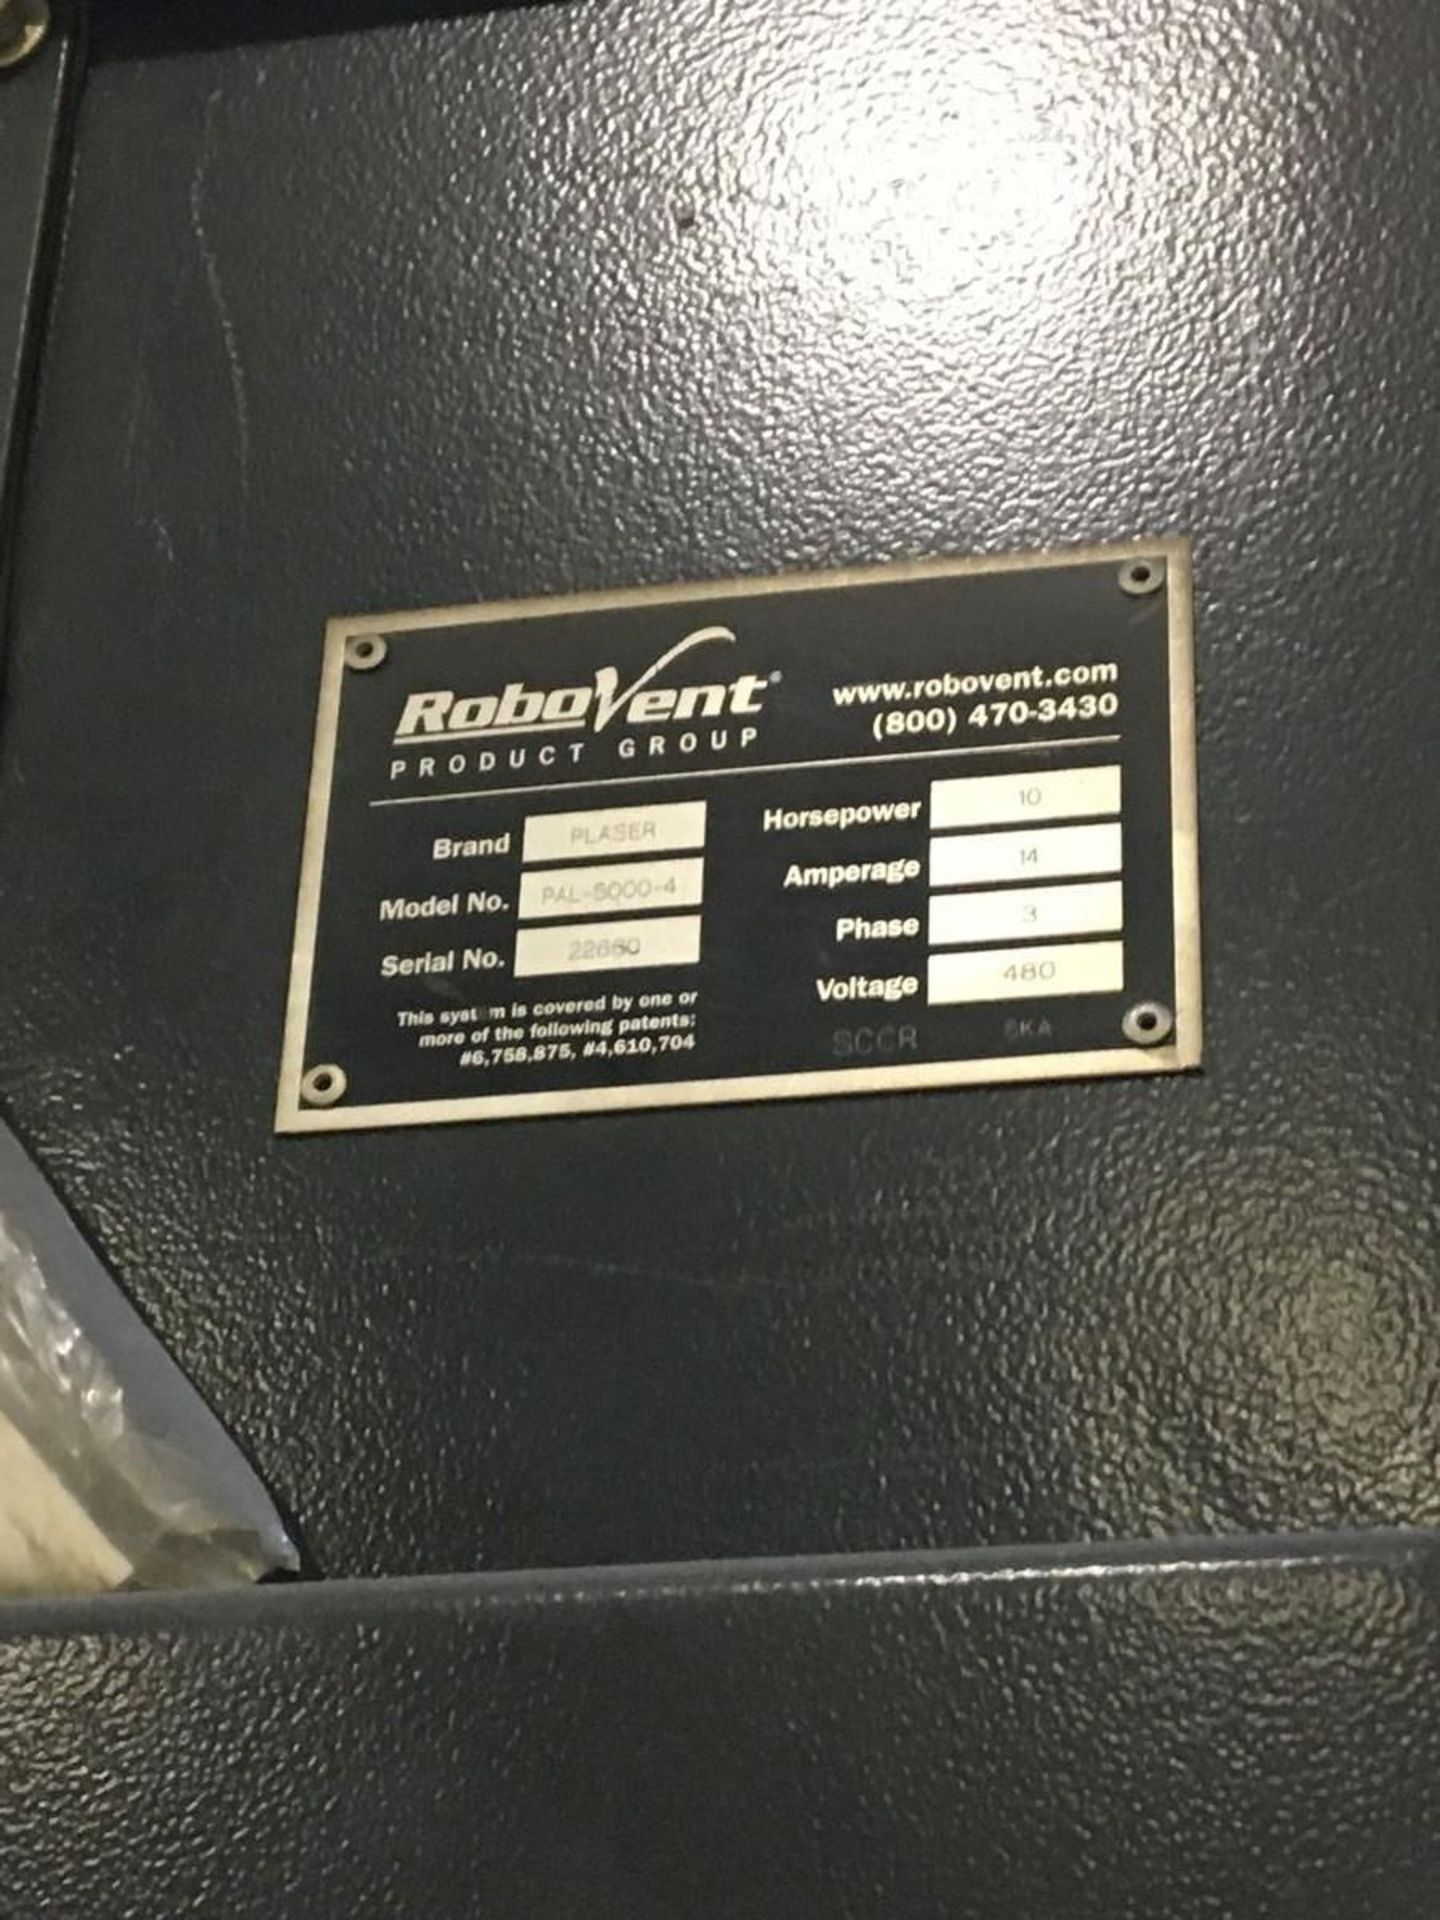 Robovent Model PAL-5000-4 Plaser Ventilation Air Filtration System - Image 2 of 7